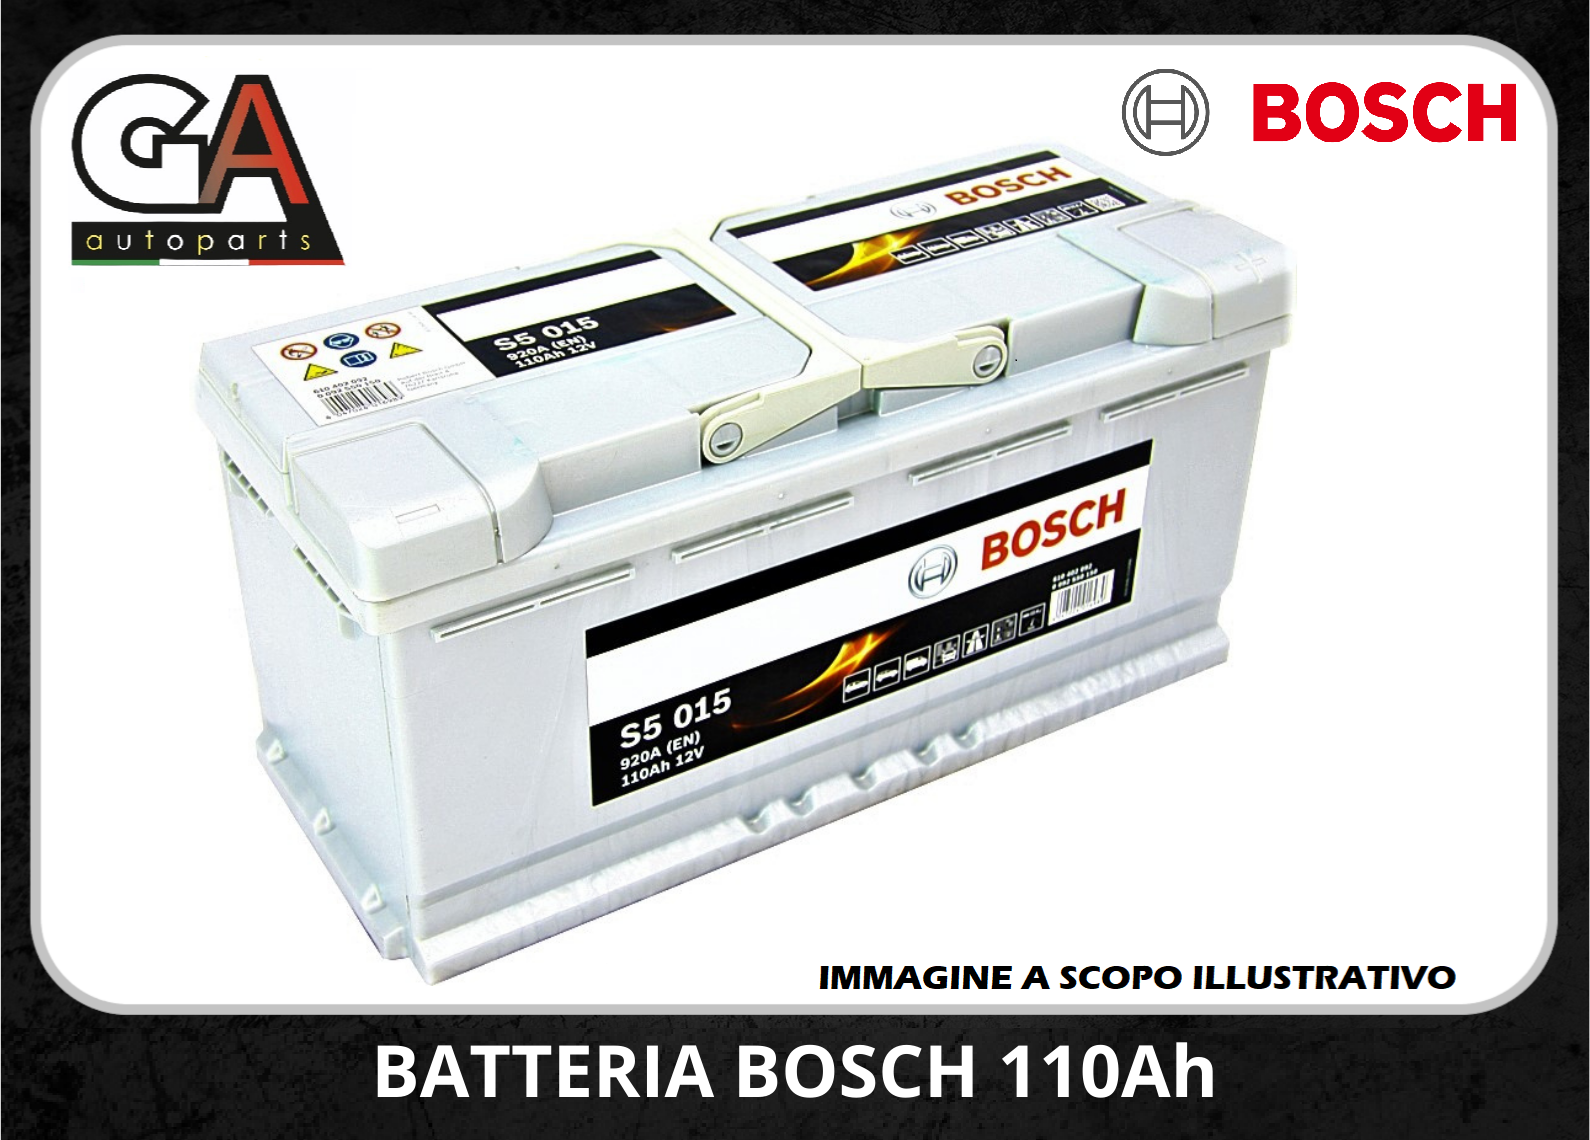 Bosch S5015 12V 110Ah 920A/EN